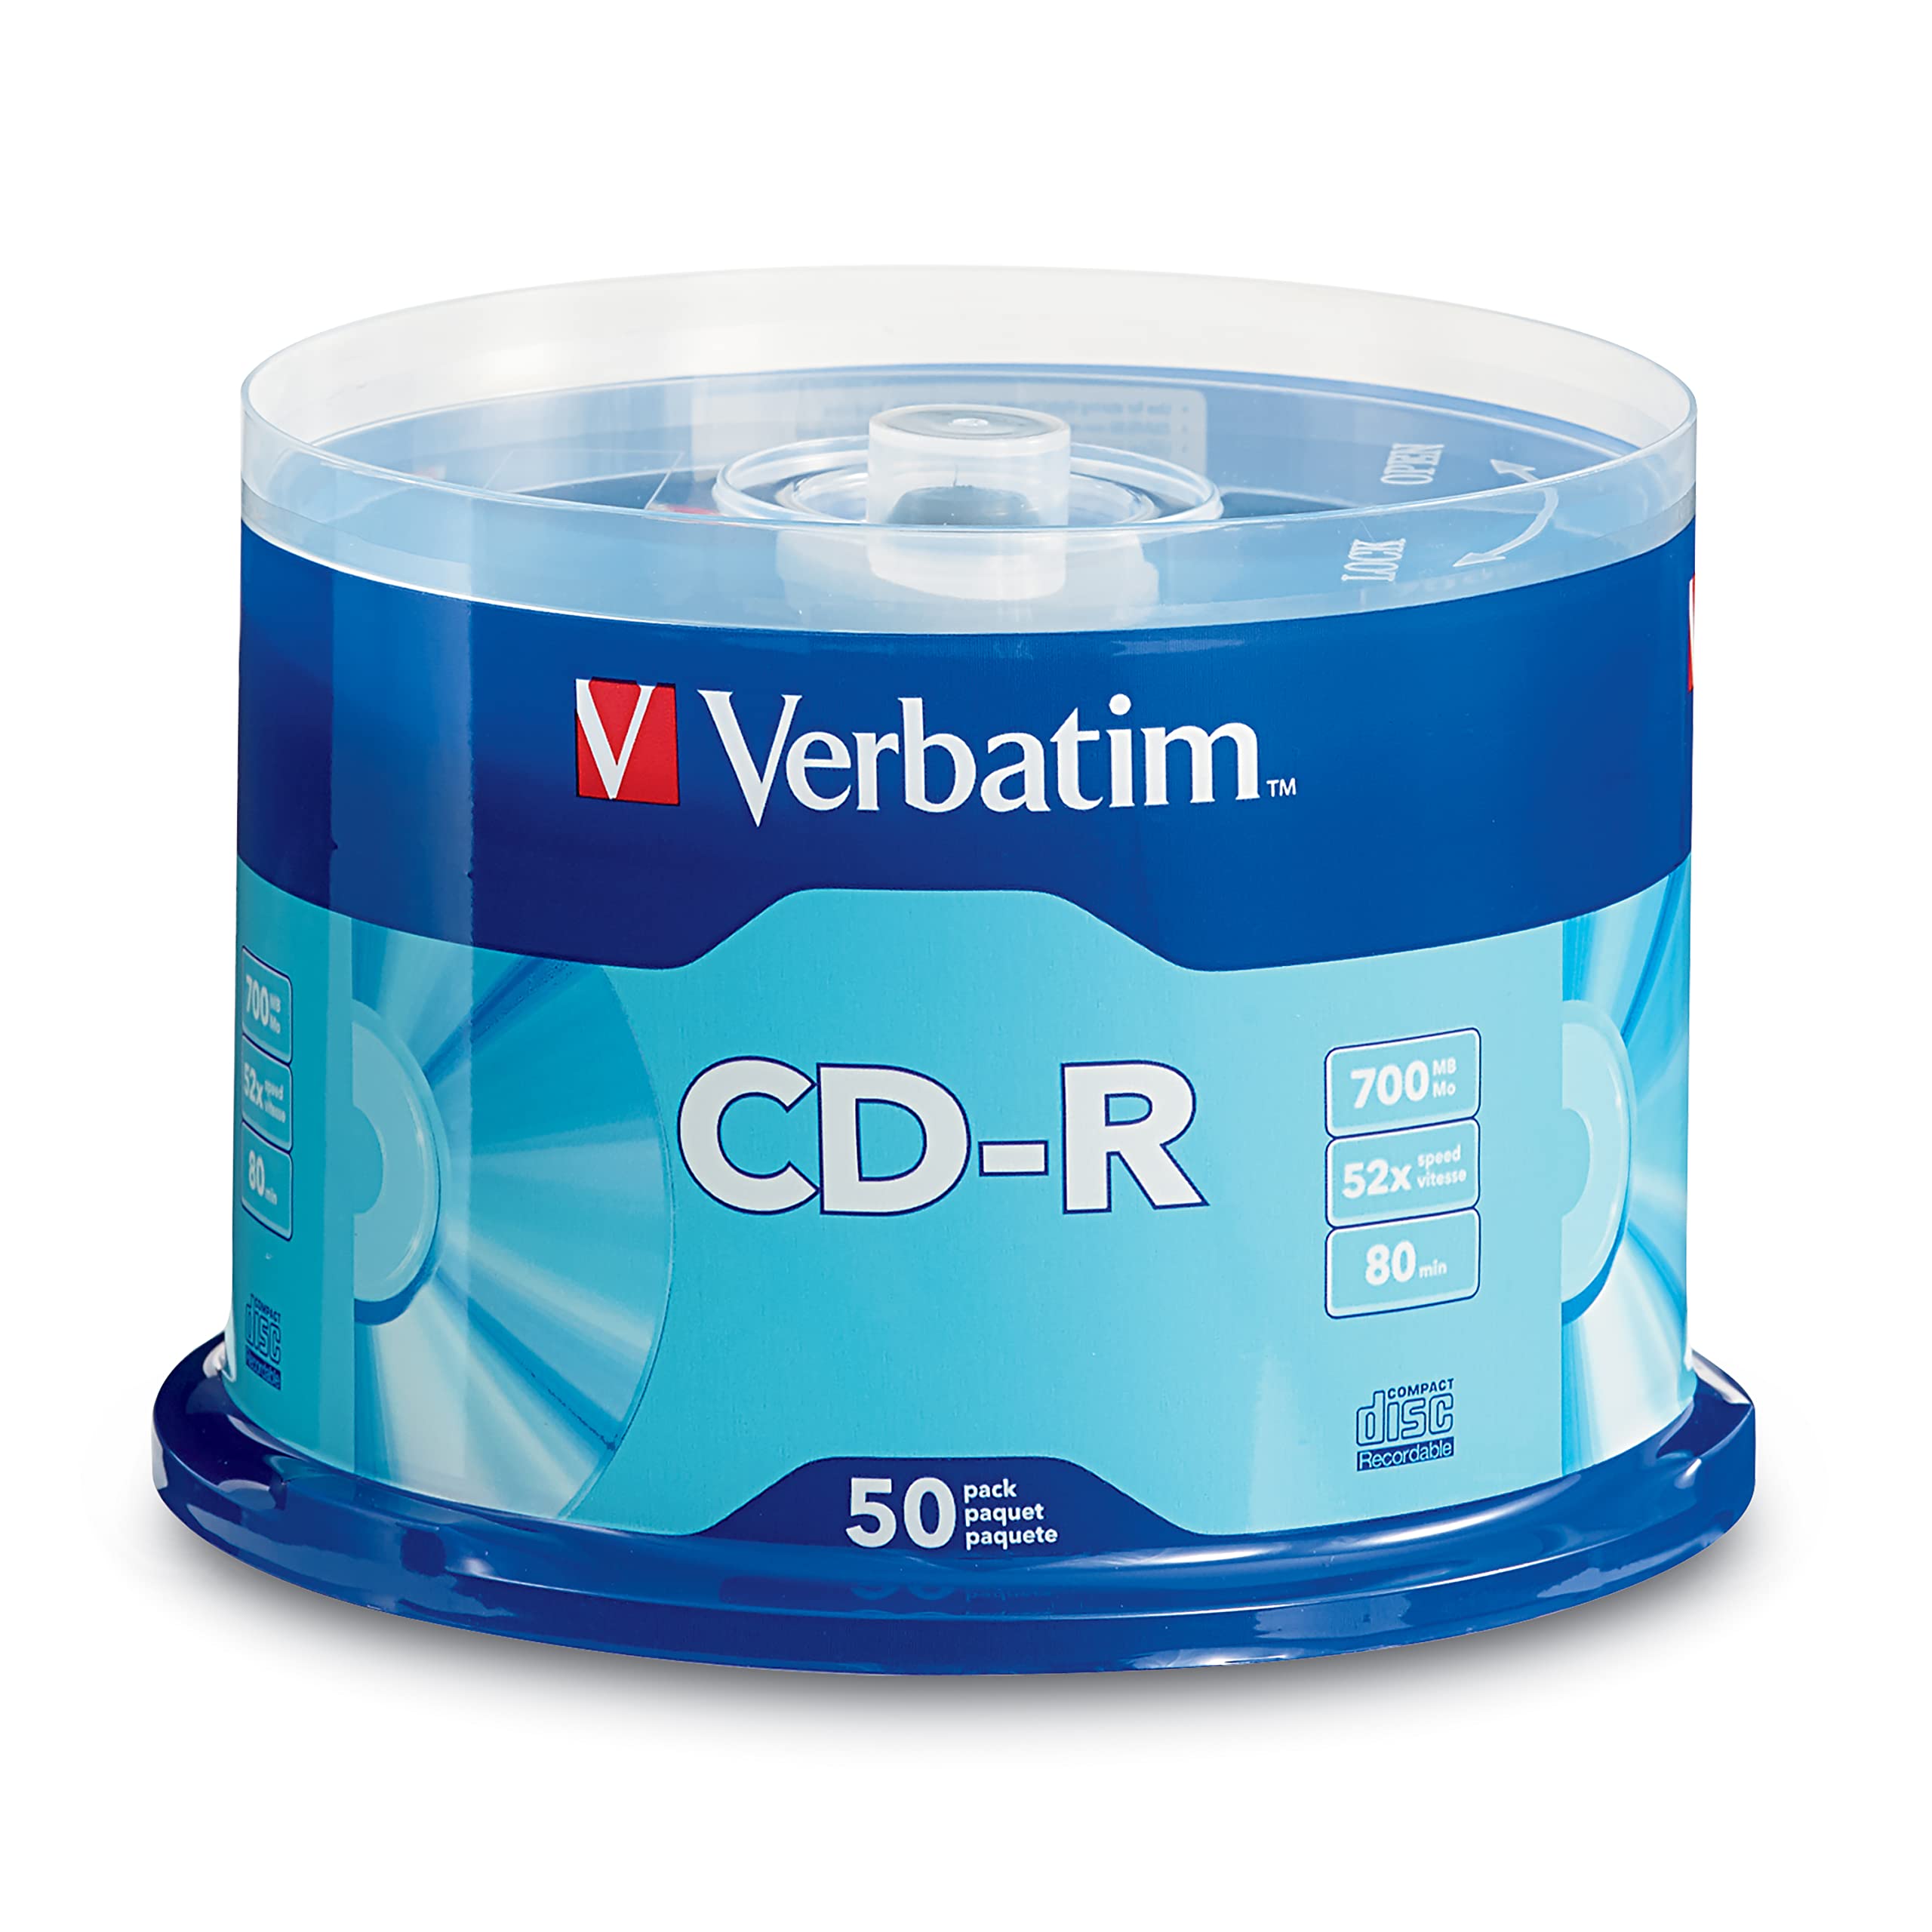 Disco Verbatim CD-R 52x 700MB torre 10 p Campana con 10 piezas. Capacidad de almacenamiento de 700 MB/80 minutos. compatible con unidades de cd de hasta 52x de velocidad. Grabación de CD en menos de 2 minutos. Discos para única grabación.                                                           zas                                      - VB96250